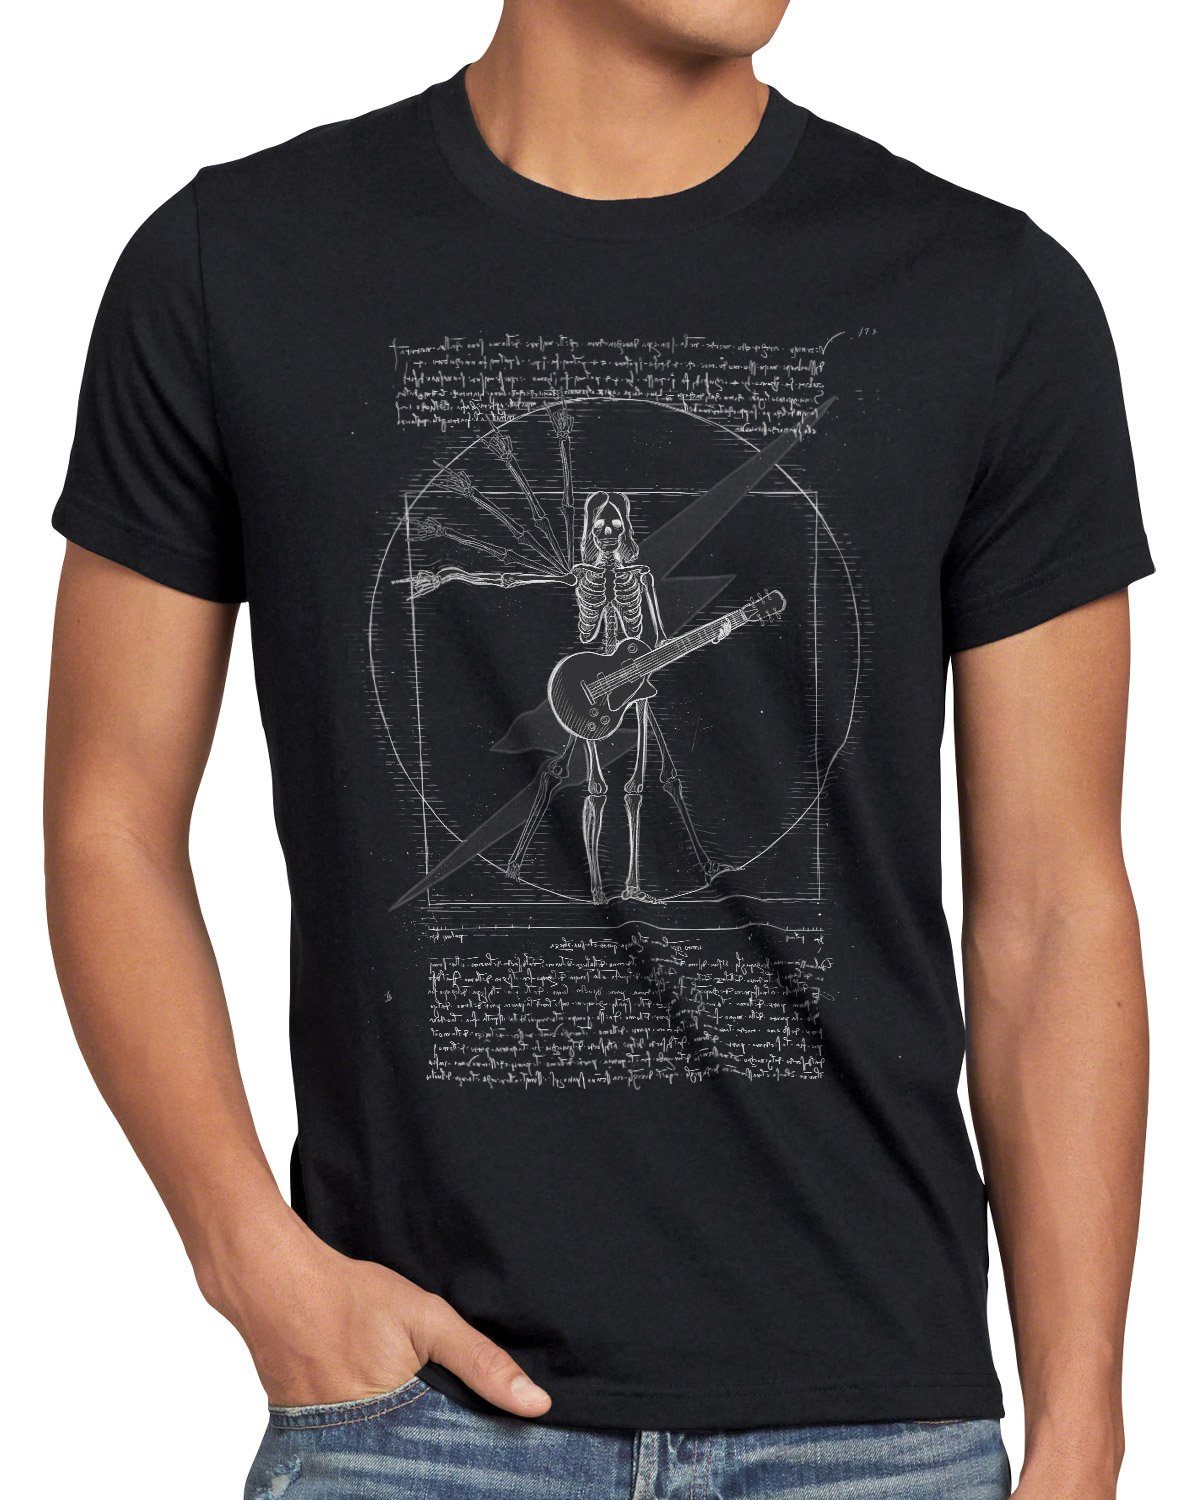 T-Shirt vitruvianischer Print-Shirt mensch schwarz style3 festival musik Rock DaVinci Herren